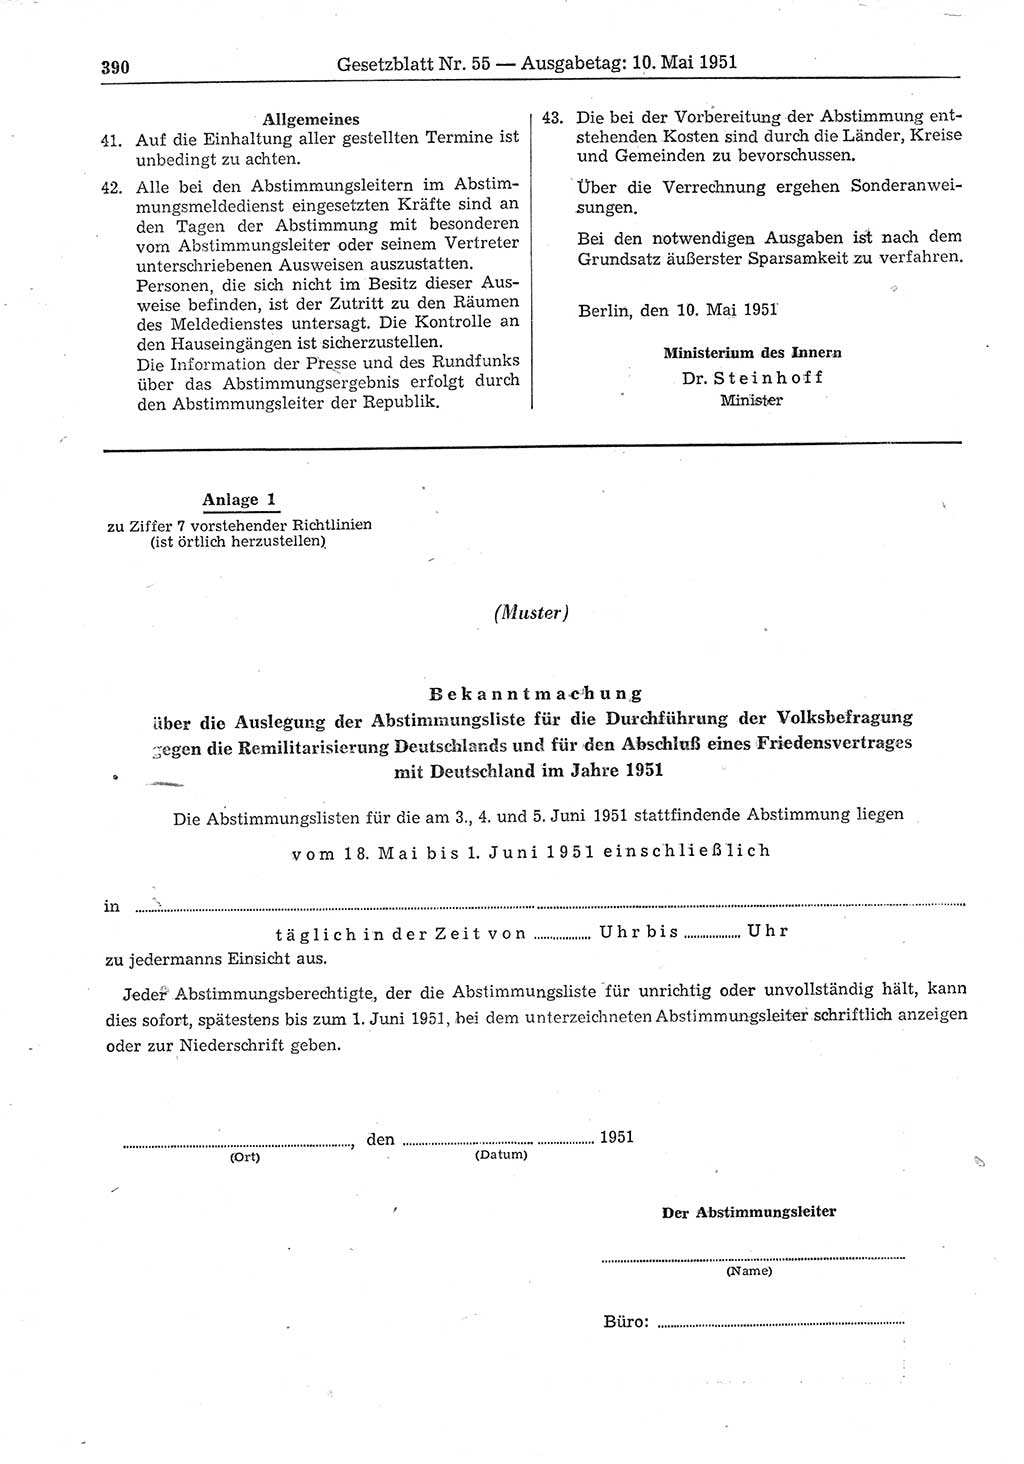 Gesetzblatt (GBl.) der Deutschen Demokratischen Republik (DDR) 1951, Seite 390 (GBl. DDR 1951, S. 390)